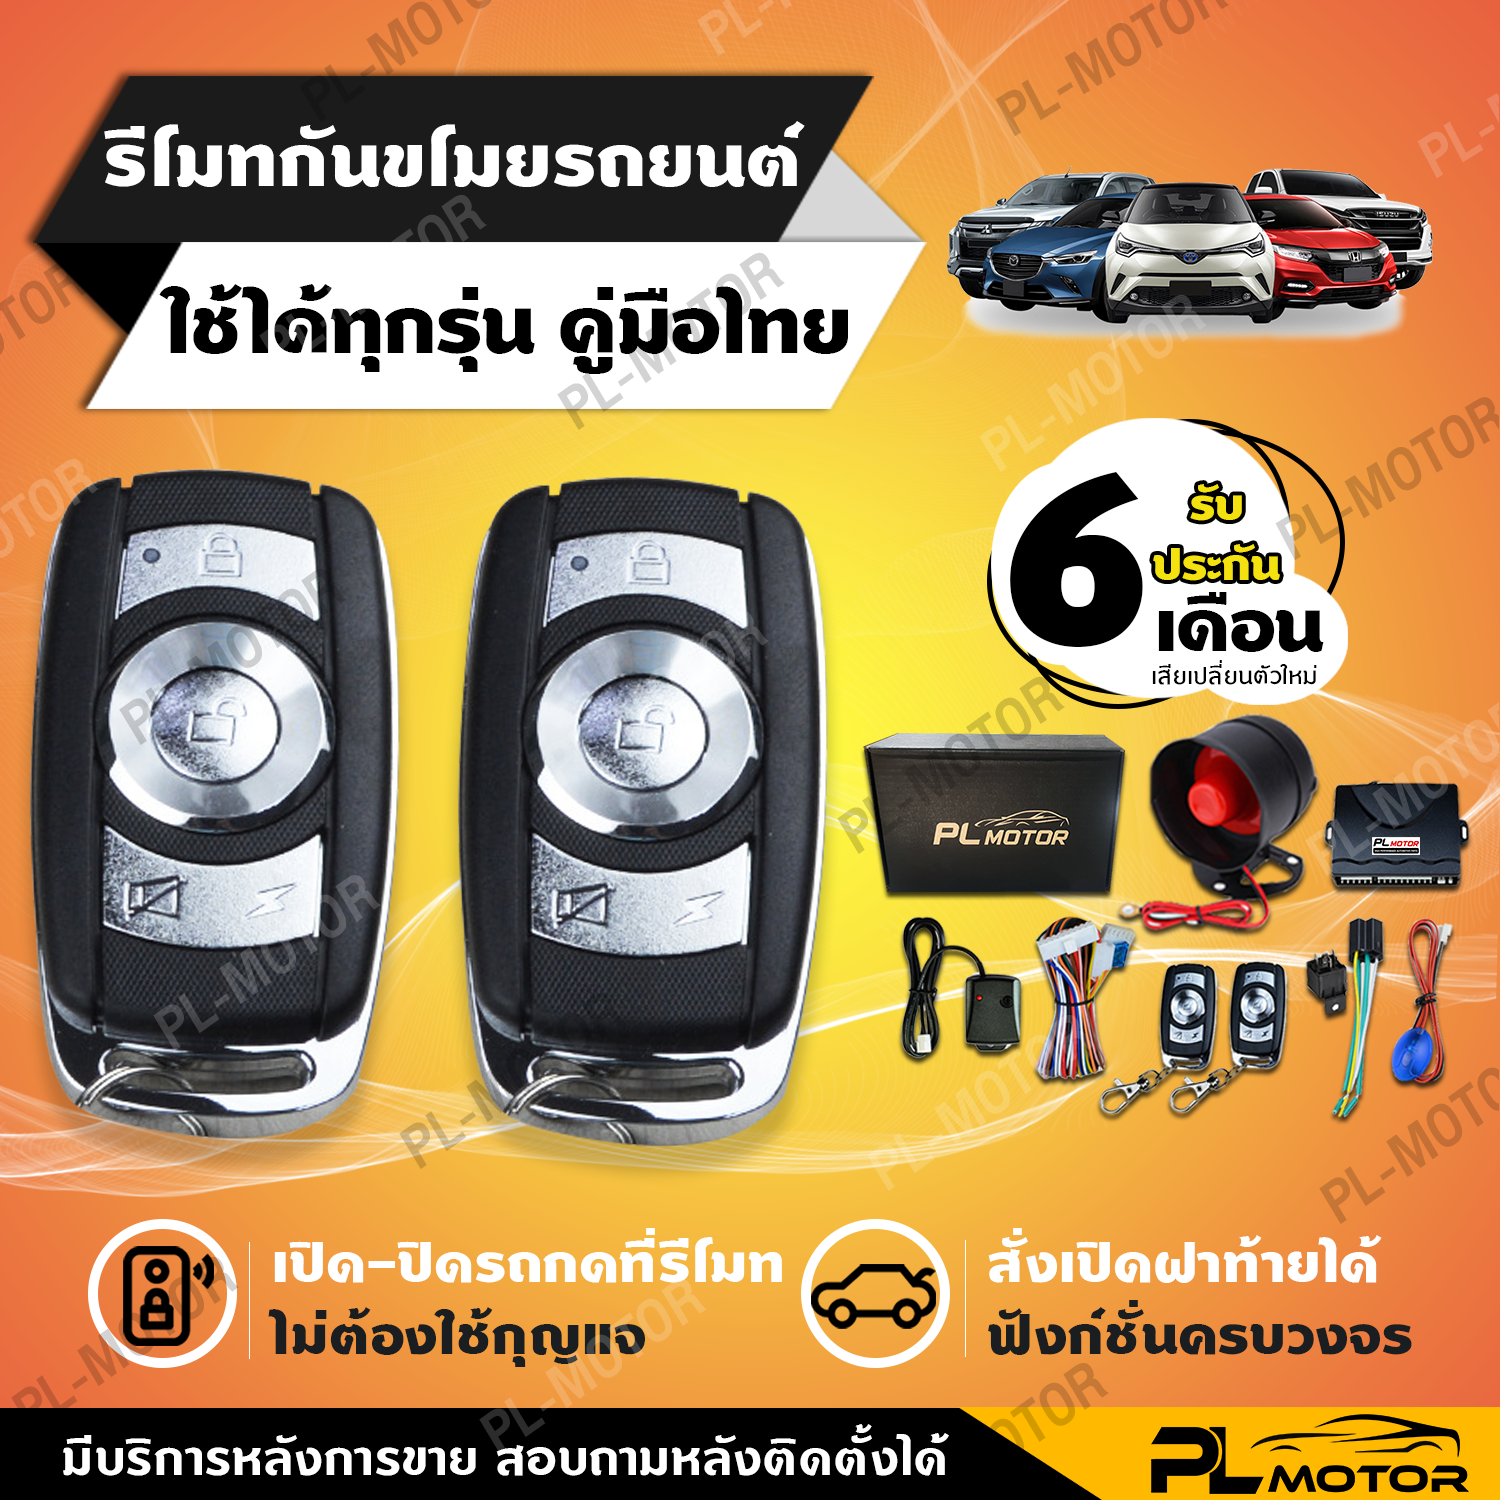 กันขโมยรถยนต์ สัญญาณกันขโมยรถยนต์ (คู่มือภาษาไทย ประกัน 6 เดือน) รีโมทรถยนต์ B ต่อชุดเปิดฝาท้ายได้ สำหรับรถยนต์ทุกรุ่น TOYOTA HONDA ISUZU